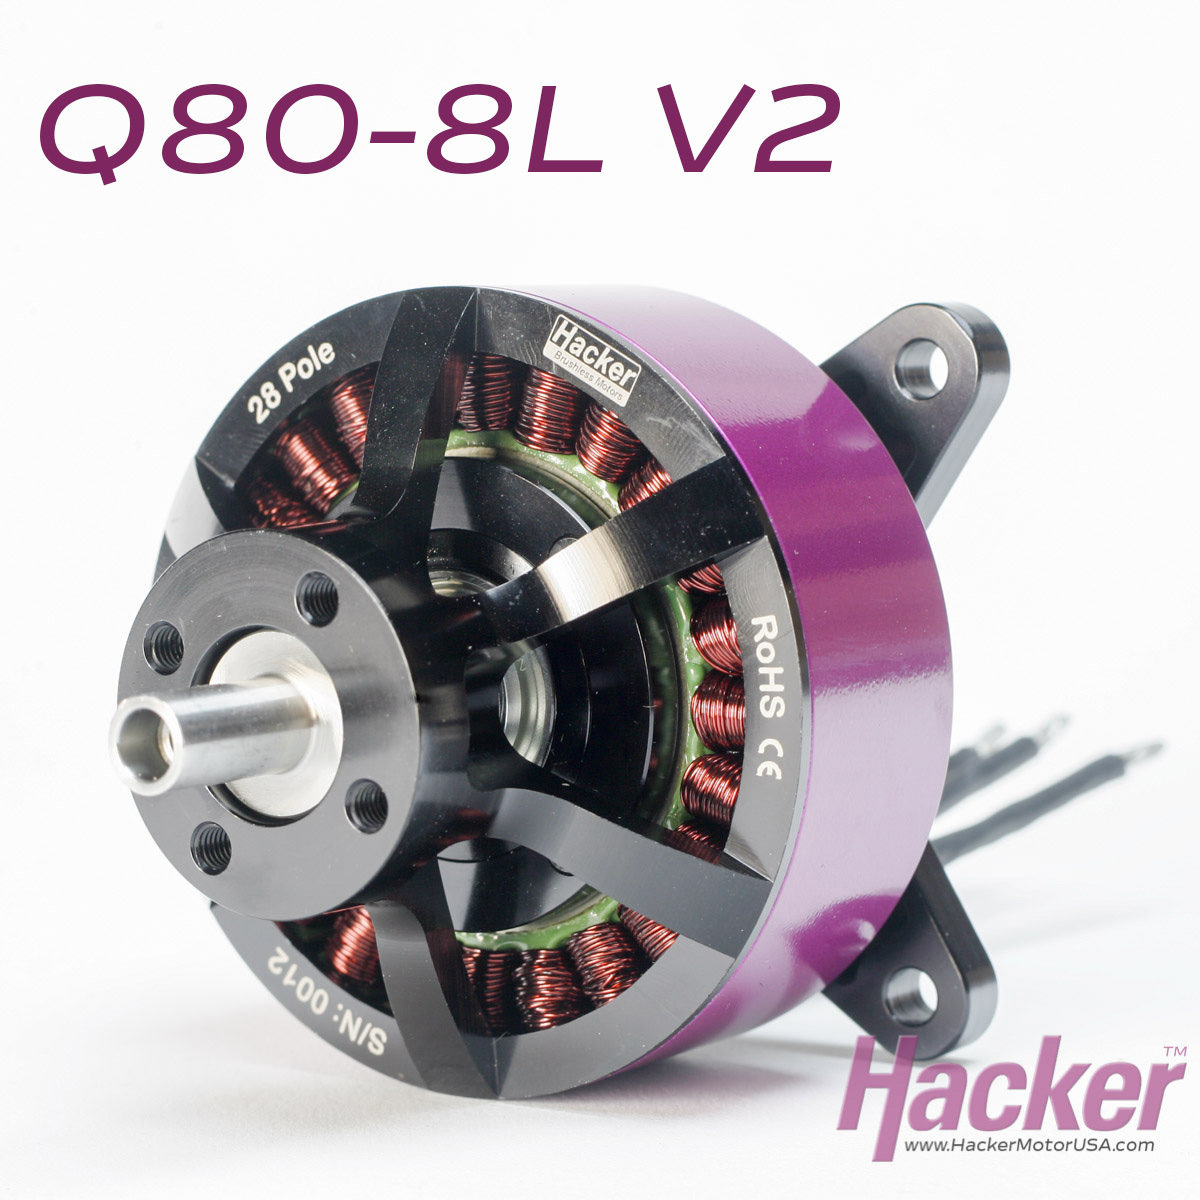 Q80-8L 135 kv 6,000 watt brushless motor